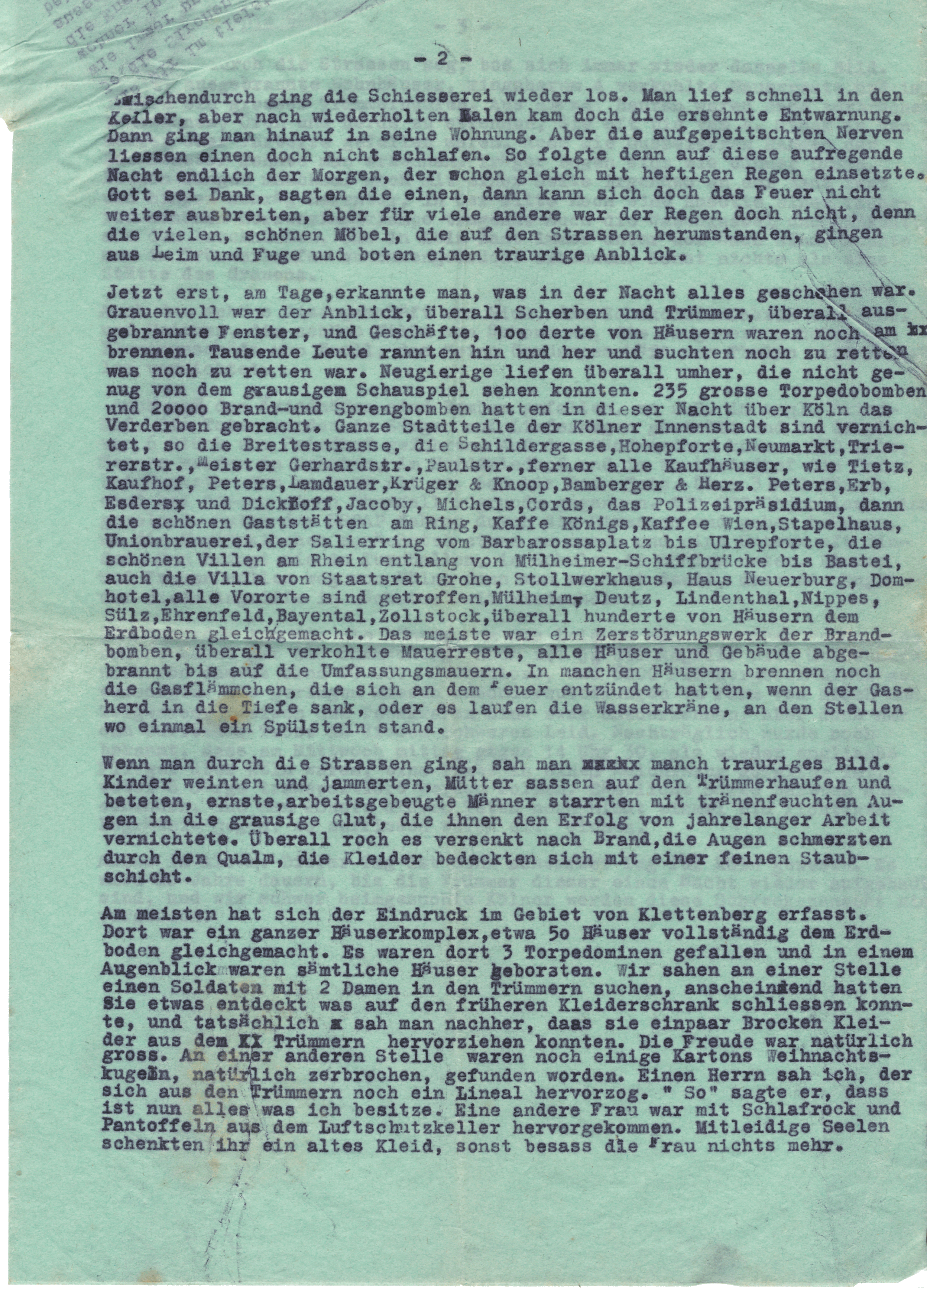 Erlebnissbericht eines Zeitzeugen aus dem bombardierten Köln im 2. WK